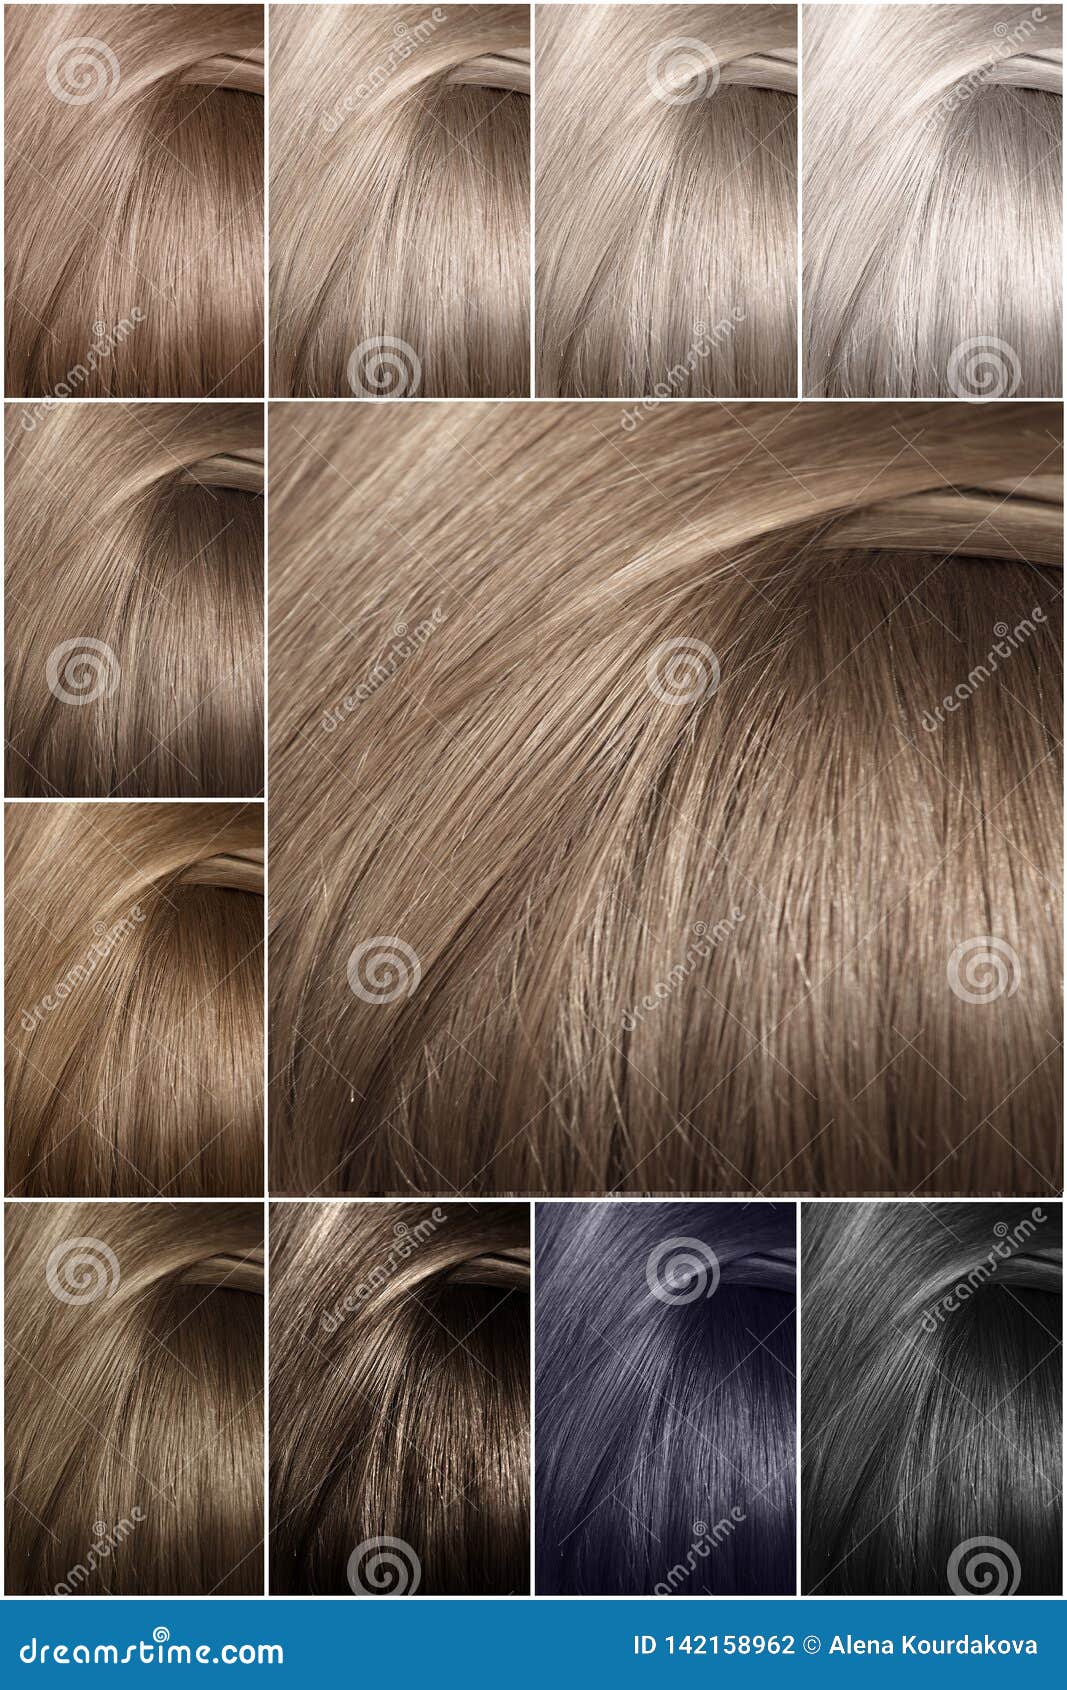 Haarfarben palette braun blond